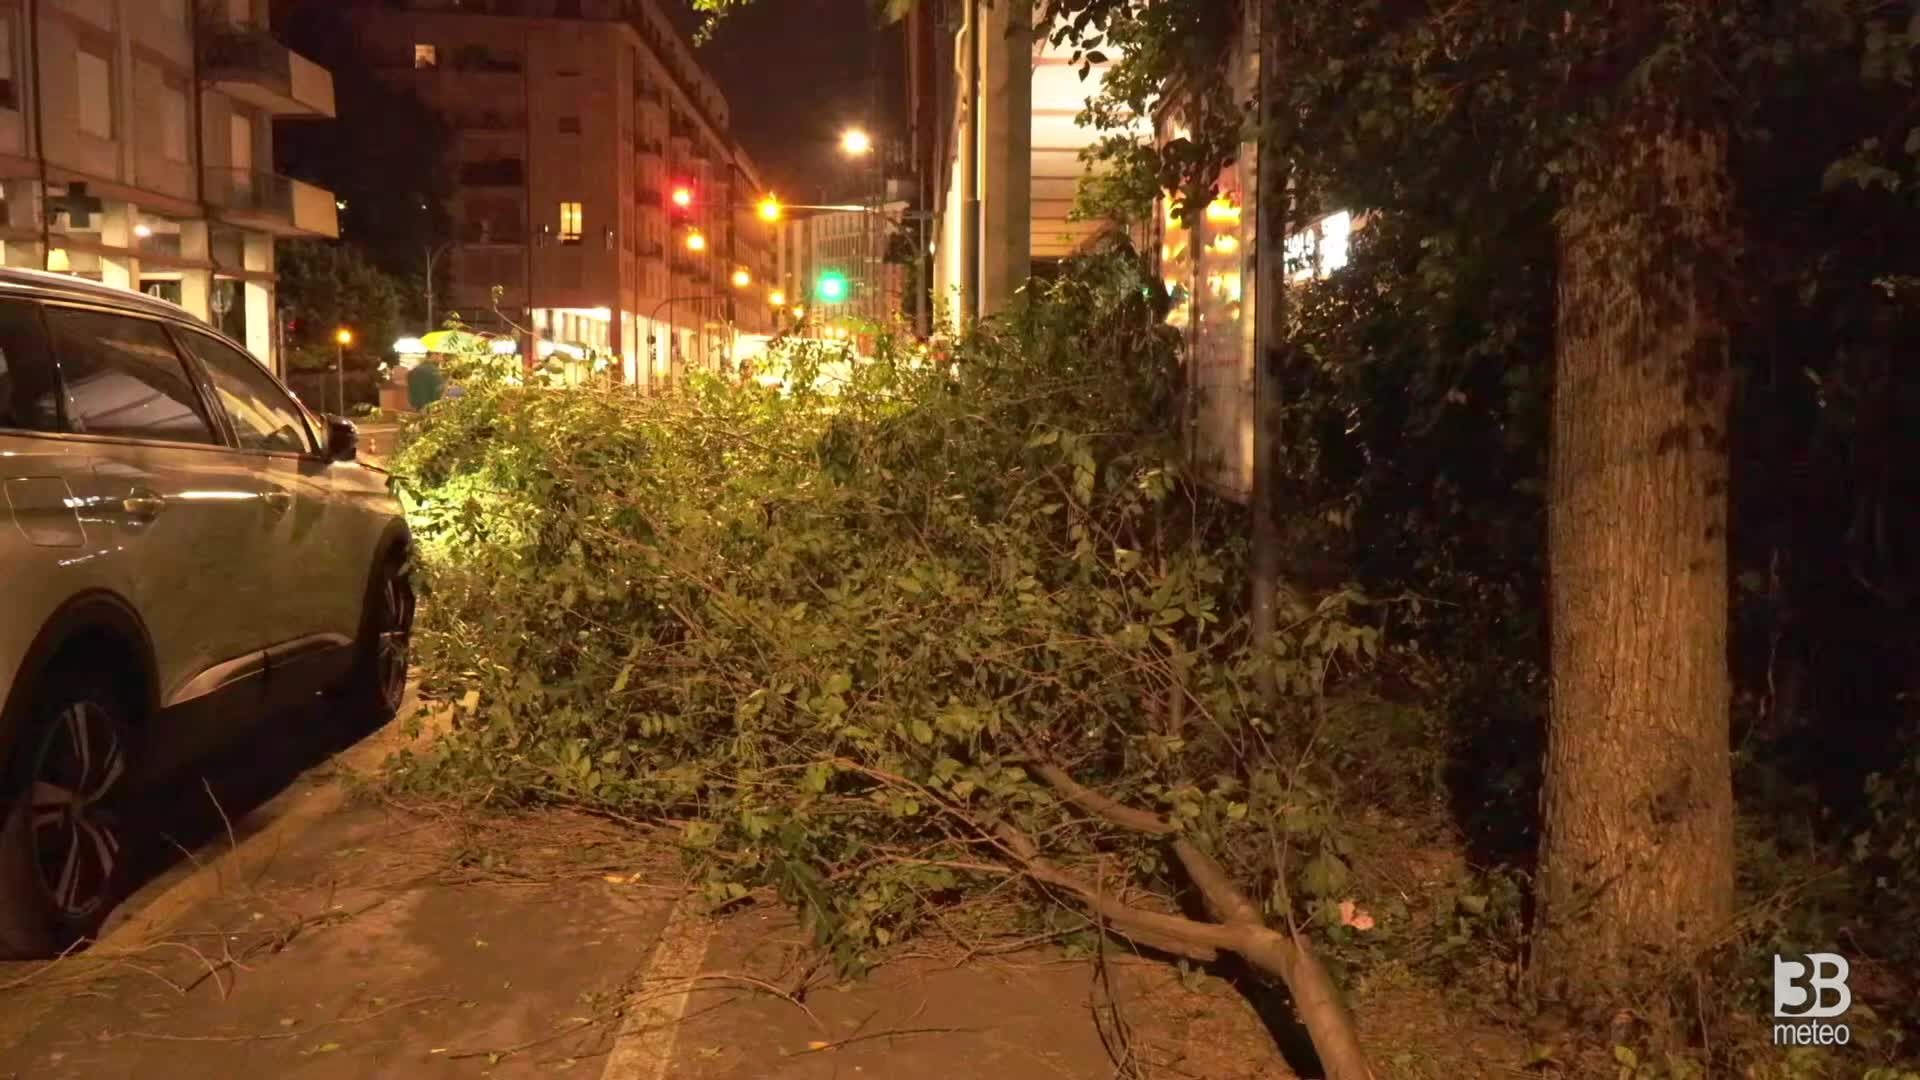 Cronaca meteo Video, Veneto: violento temporale a Padova con raffiche di vento, alberi caduti